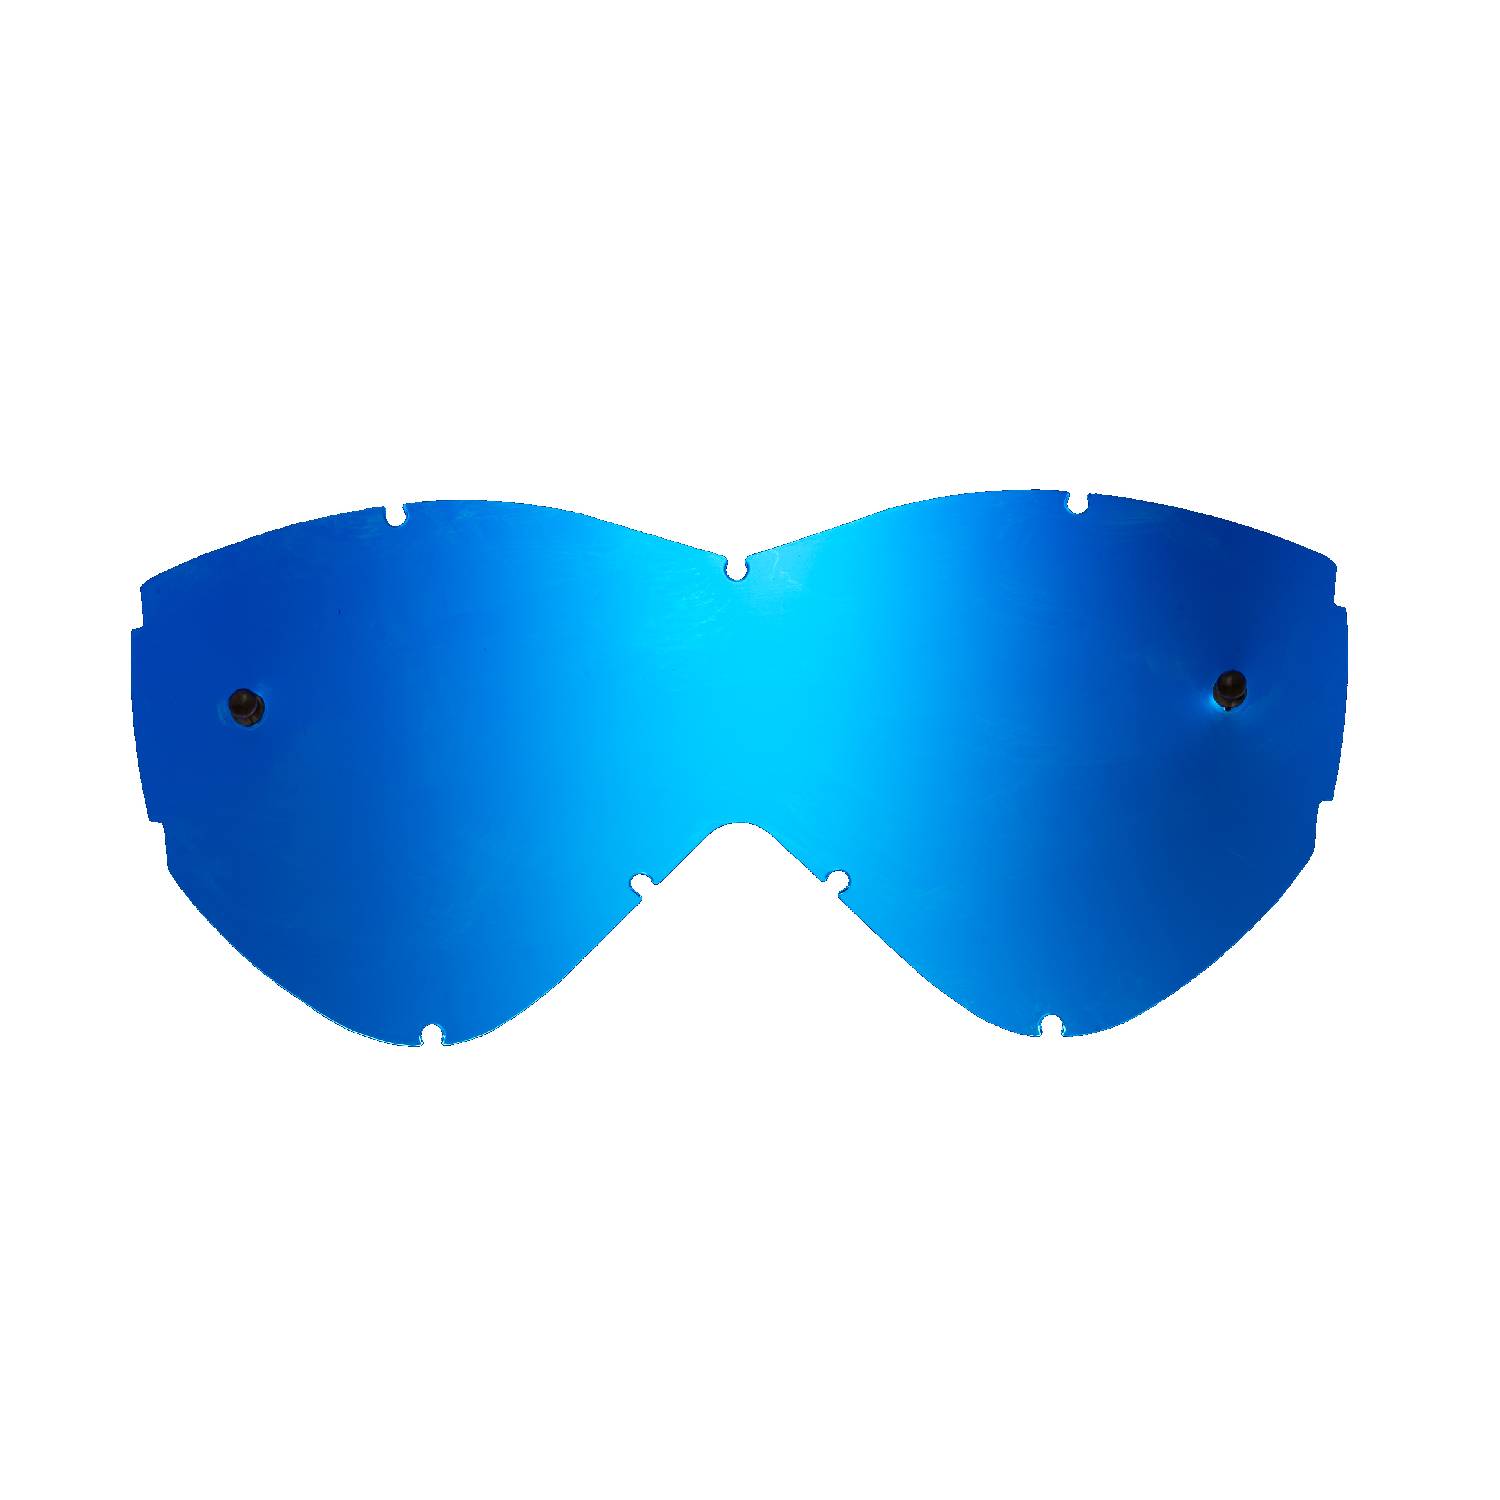 Lente di ricambio blu specchiato compatibile per occhiale/maschera Smith Warp